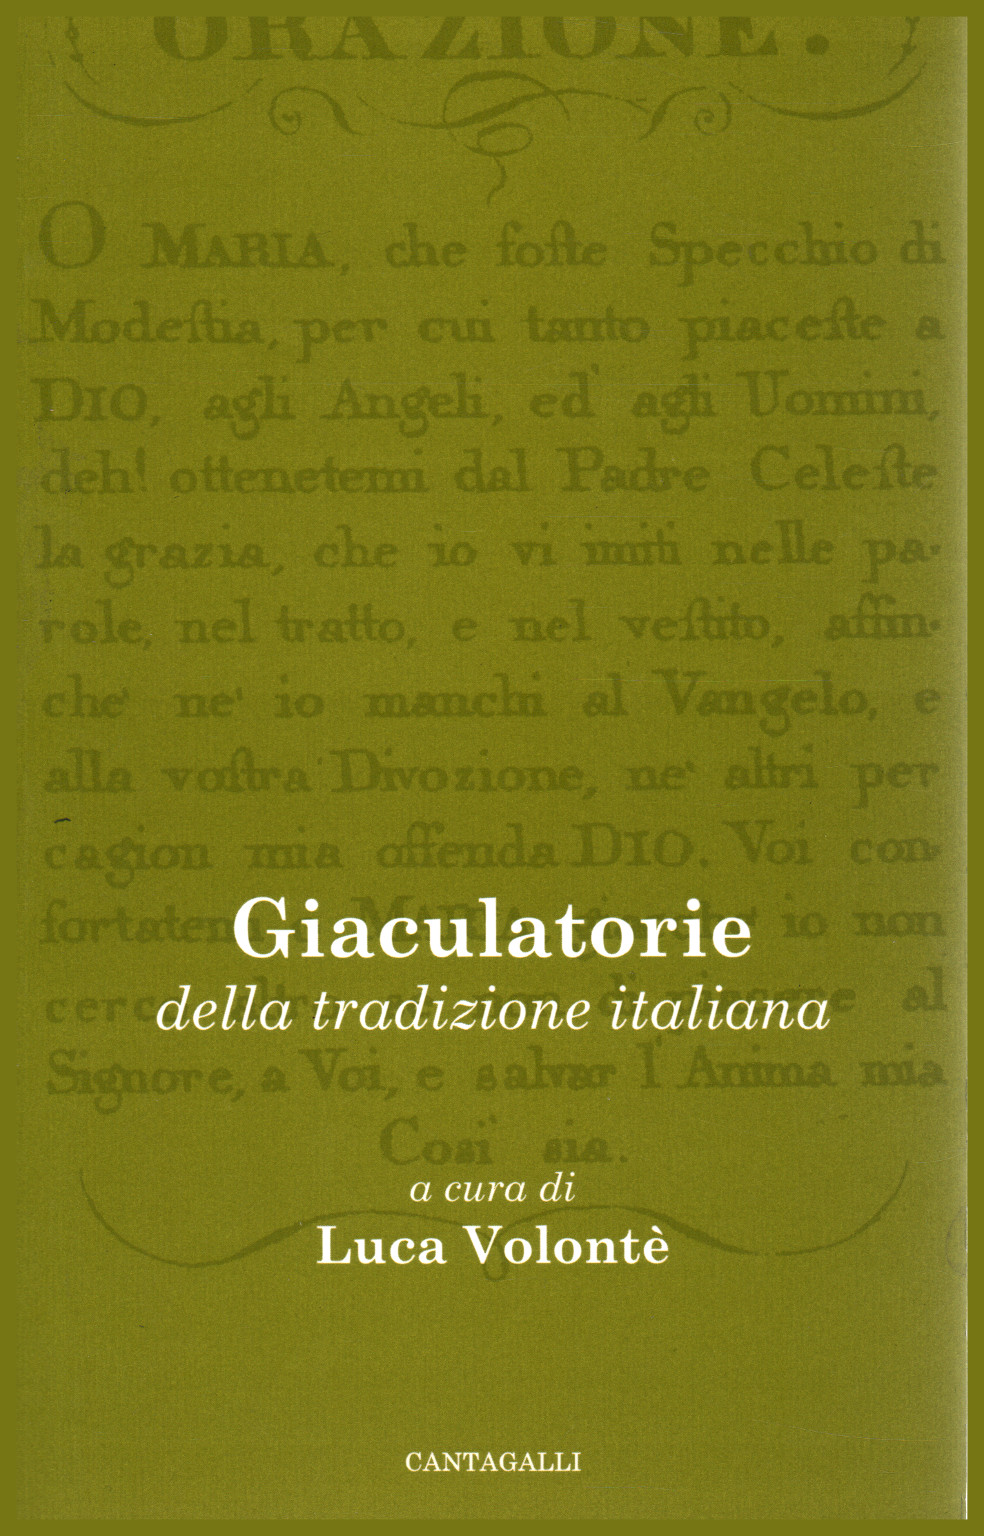 Giaculatorie della tradizione italiana, s.a.